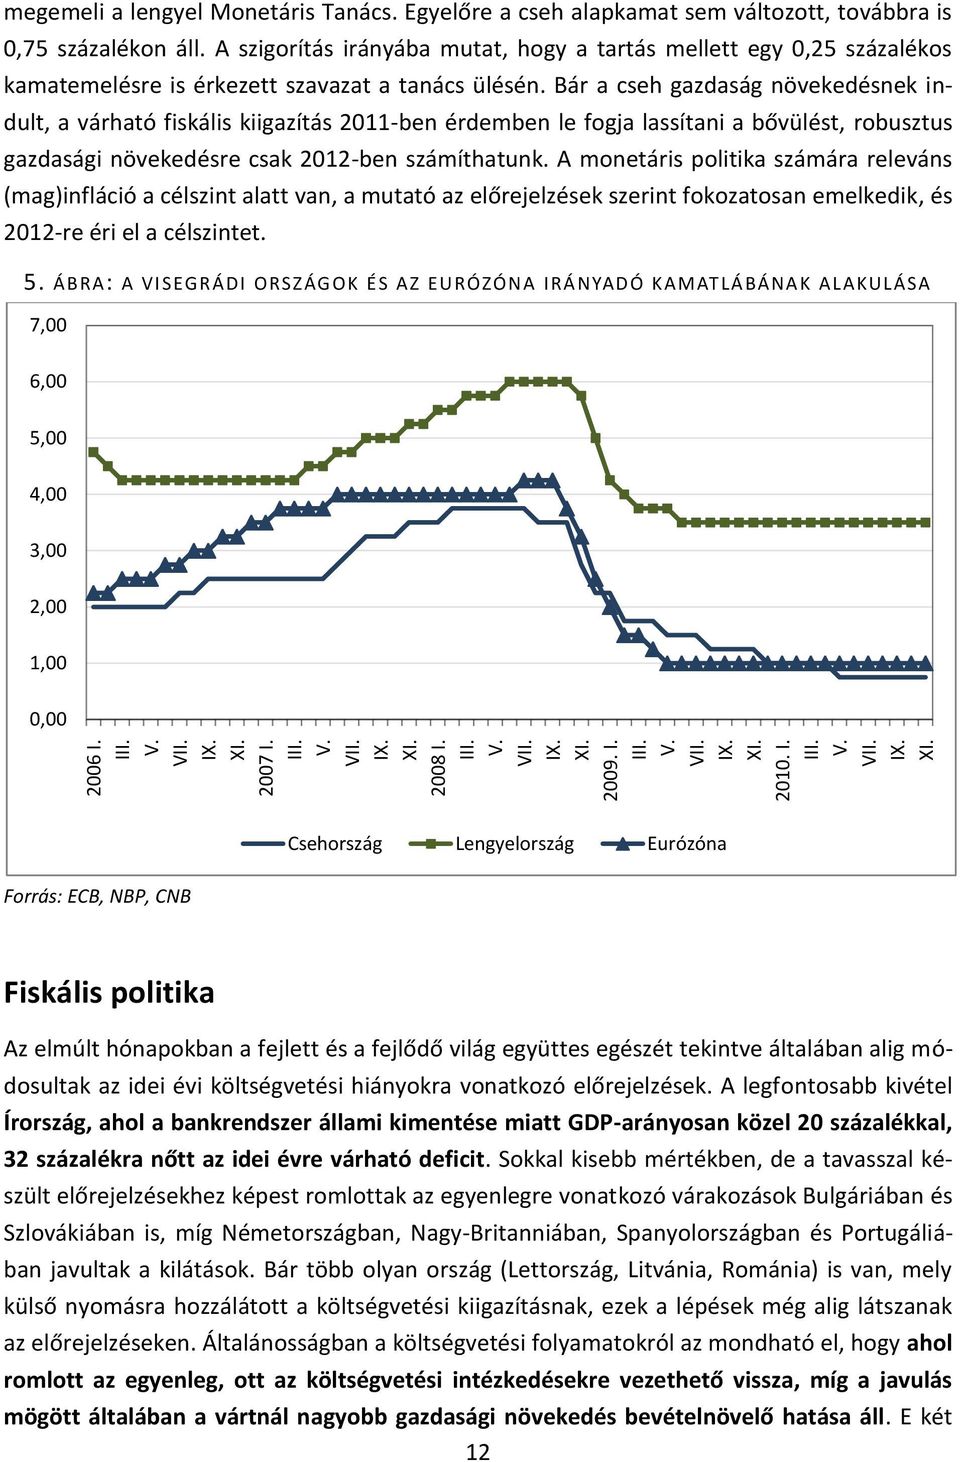 Bár a cseh gazdaság növekedésnek indult, a várható fiskális kiigazítás 2011-ben érdemben le fogja lassítani a bővülést, robusztus gazdasági növekedésre csak 2012-ben számíthatunk.